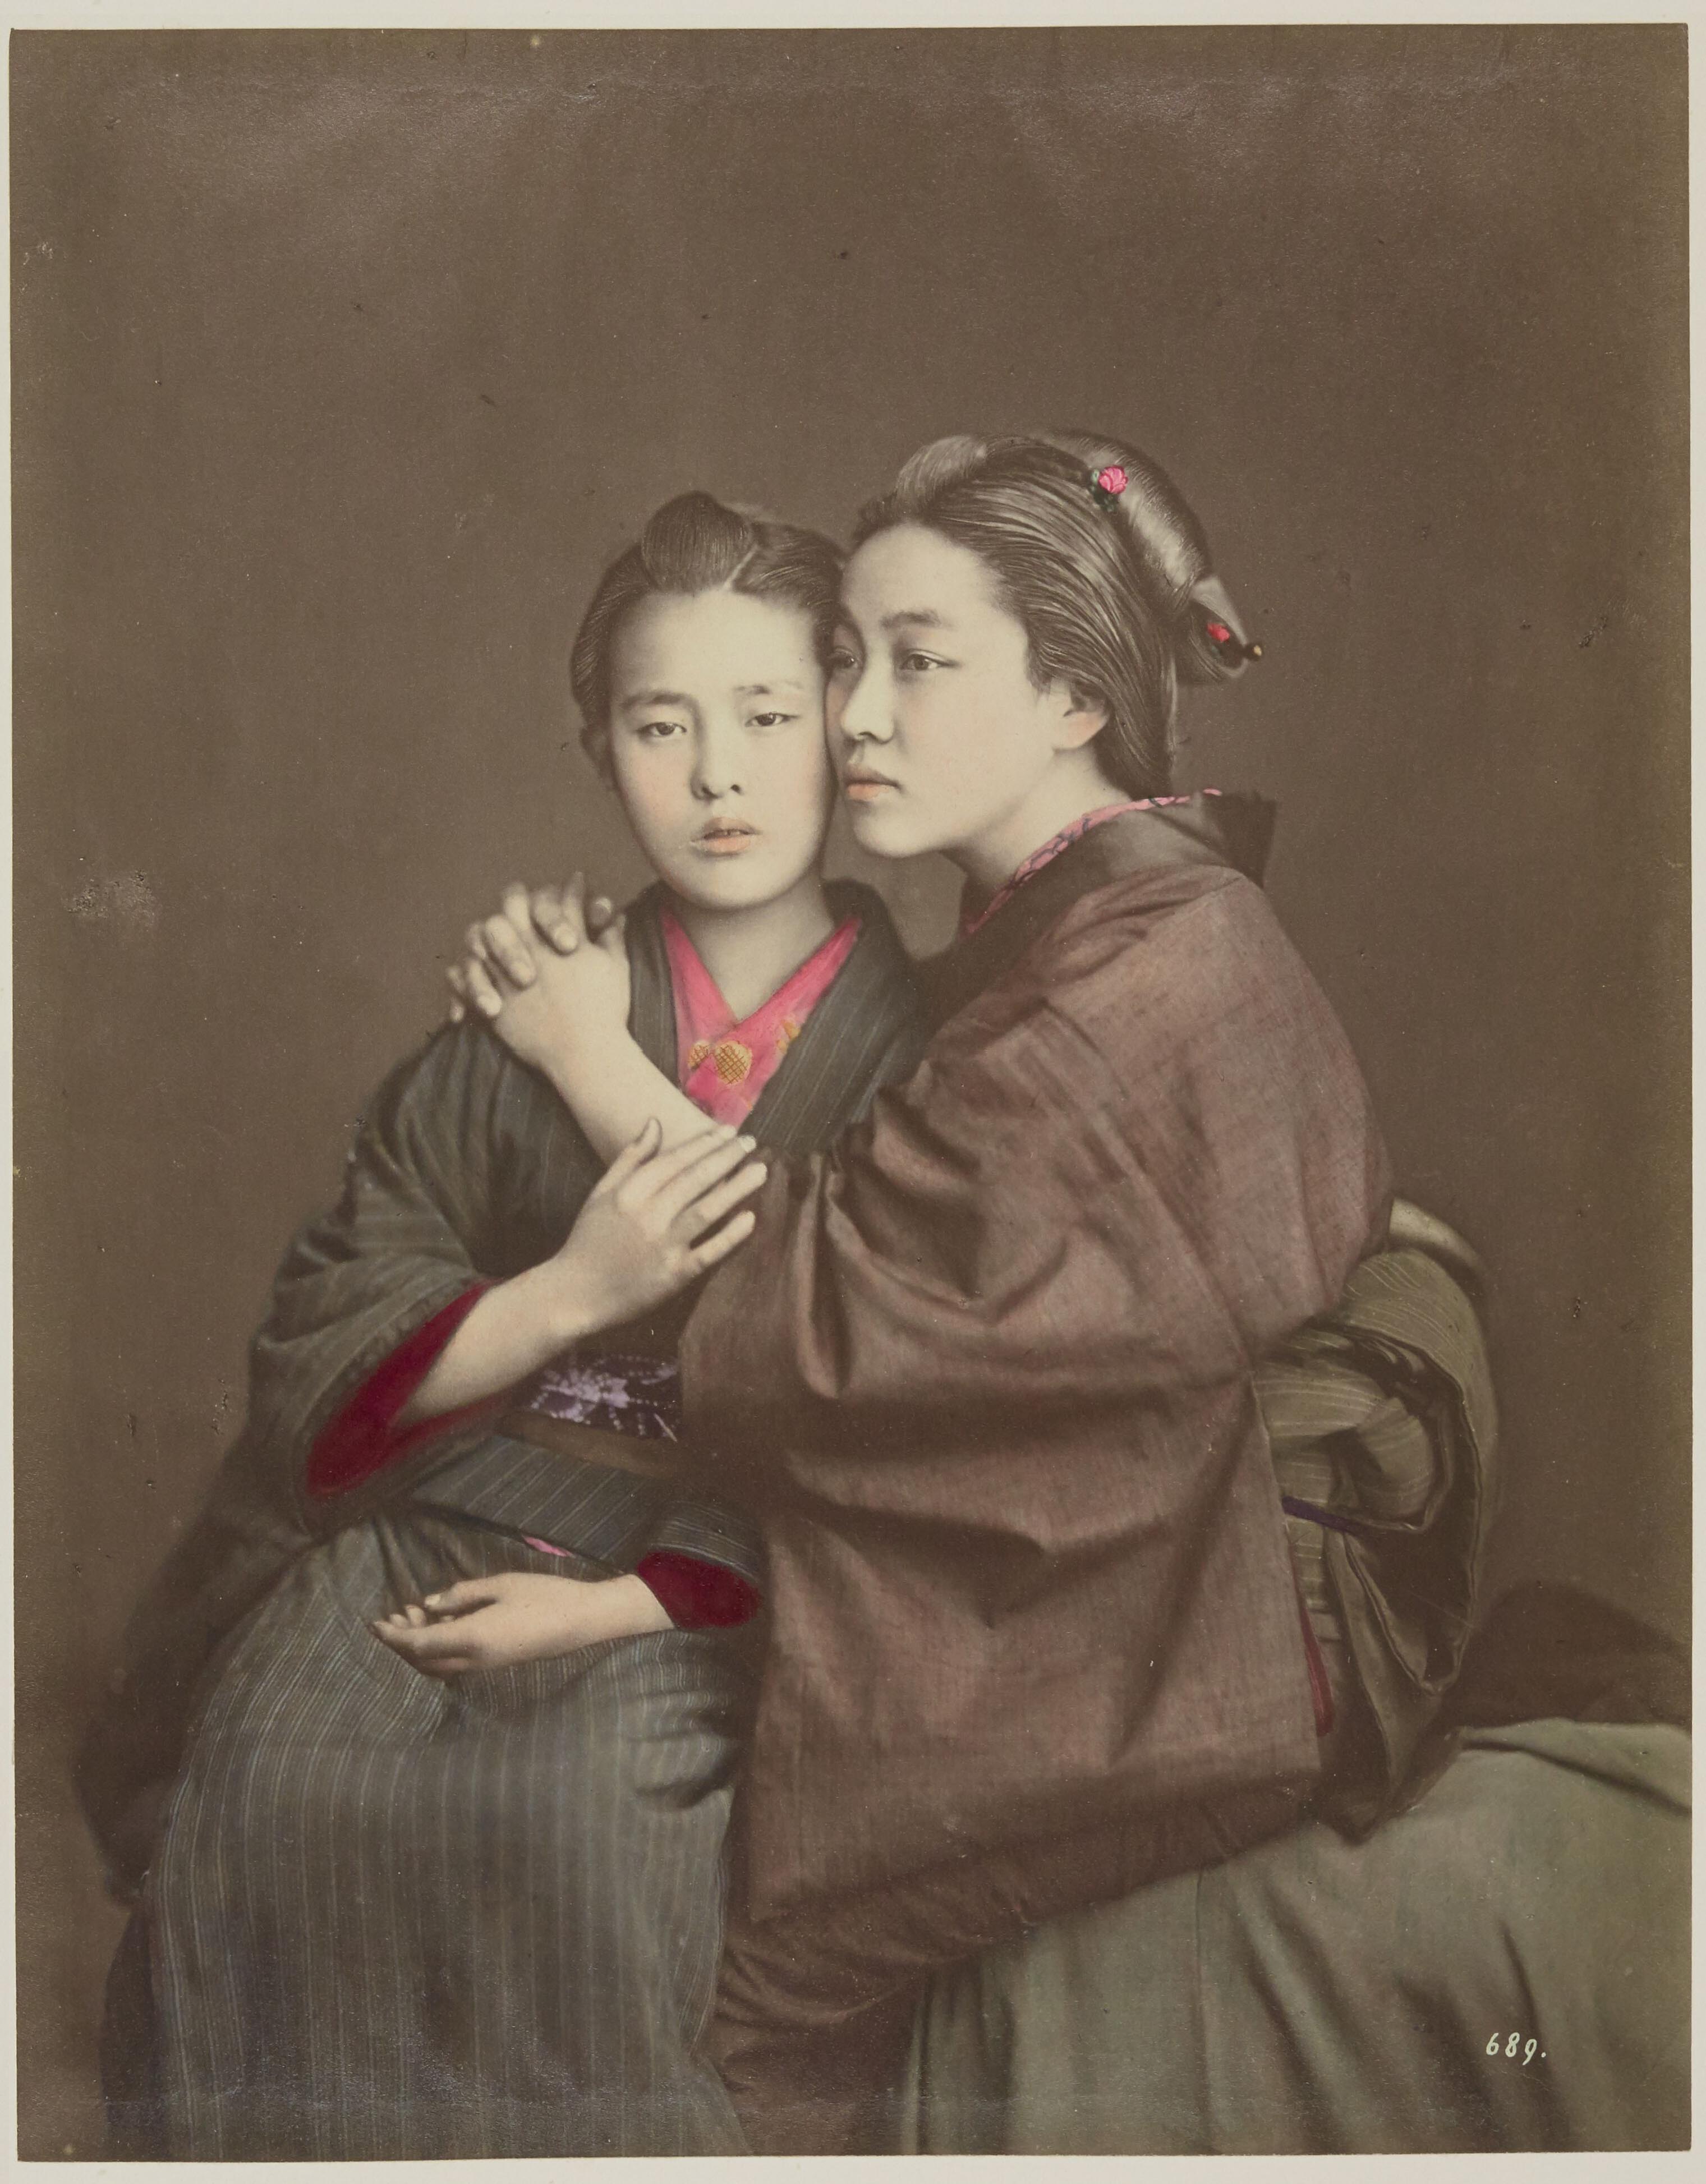 Raimund von Stillfried :: [Jeunes filles] [Young girls] [Japonais, album 2 of 5] [nº 689] (taken 1875), published 1877-1878 (tirage sur papier albuminé coloriés à la main) | src BnF ~ Gallica